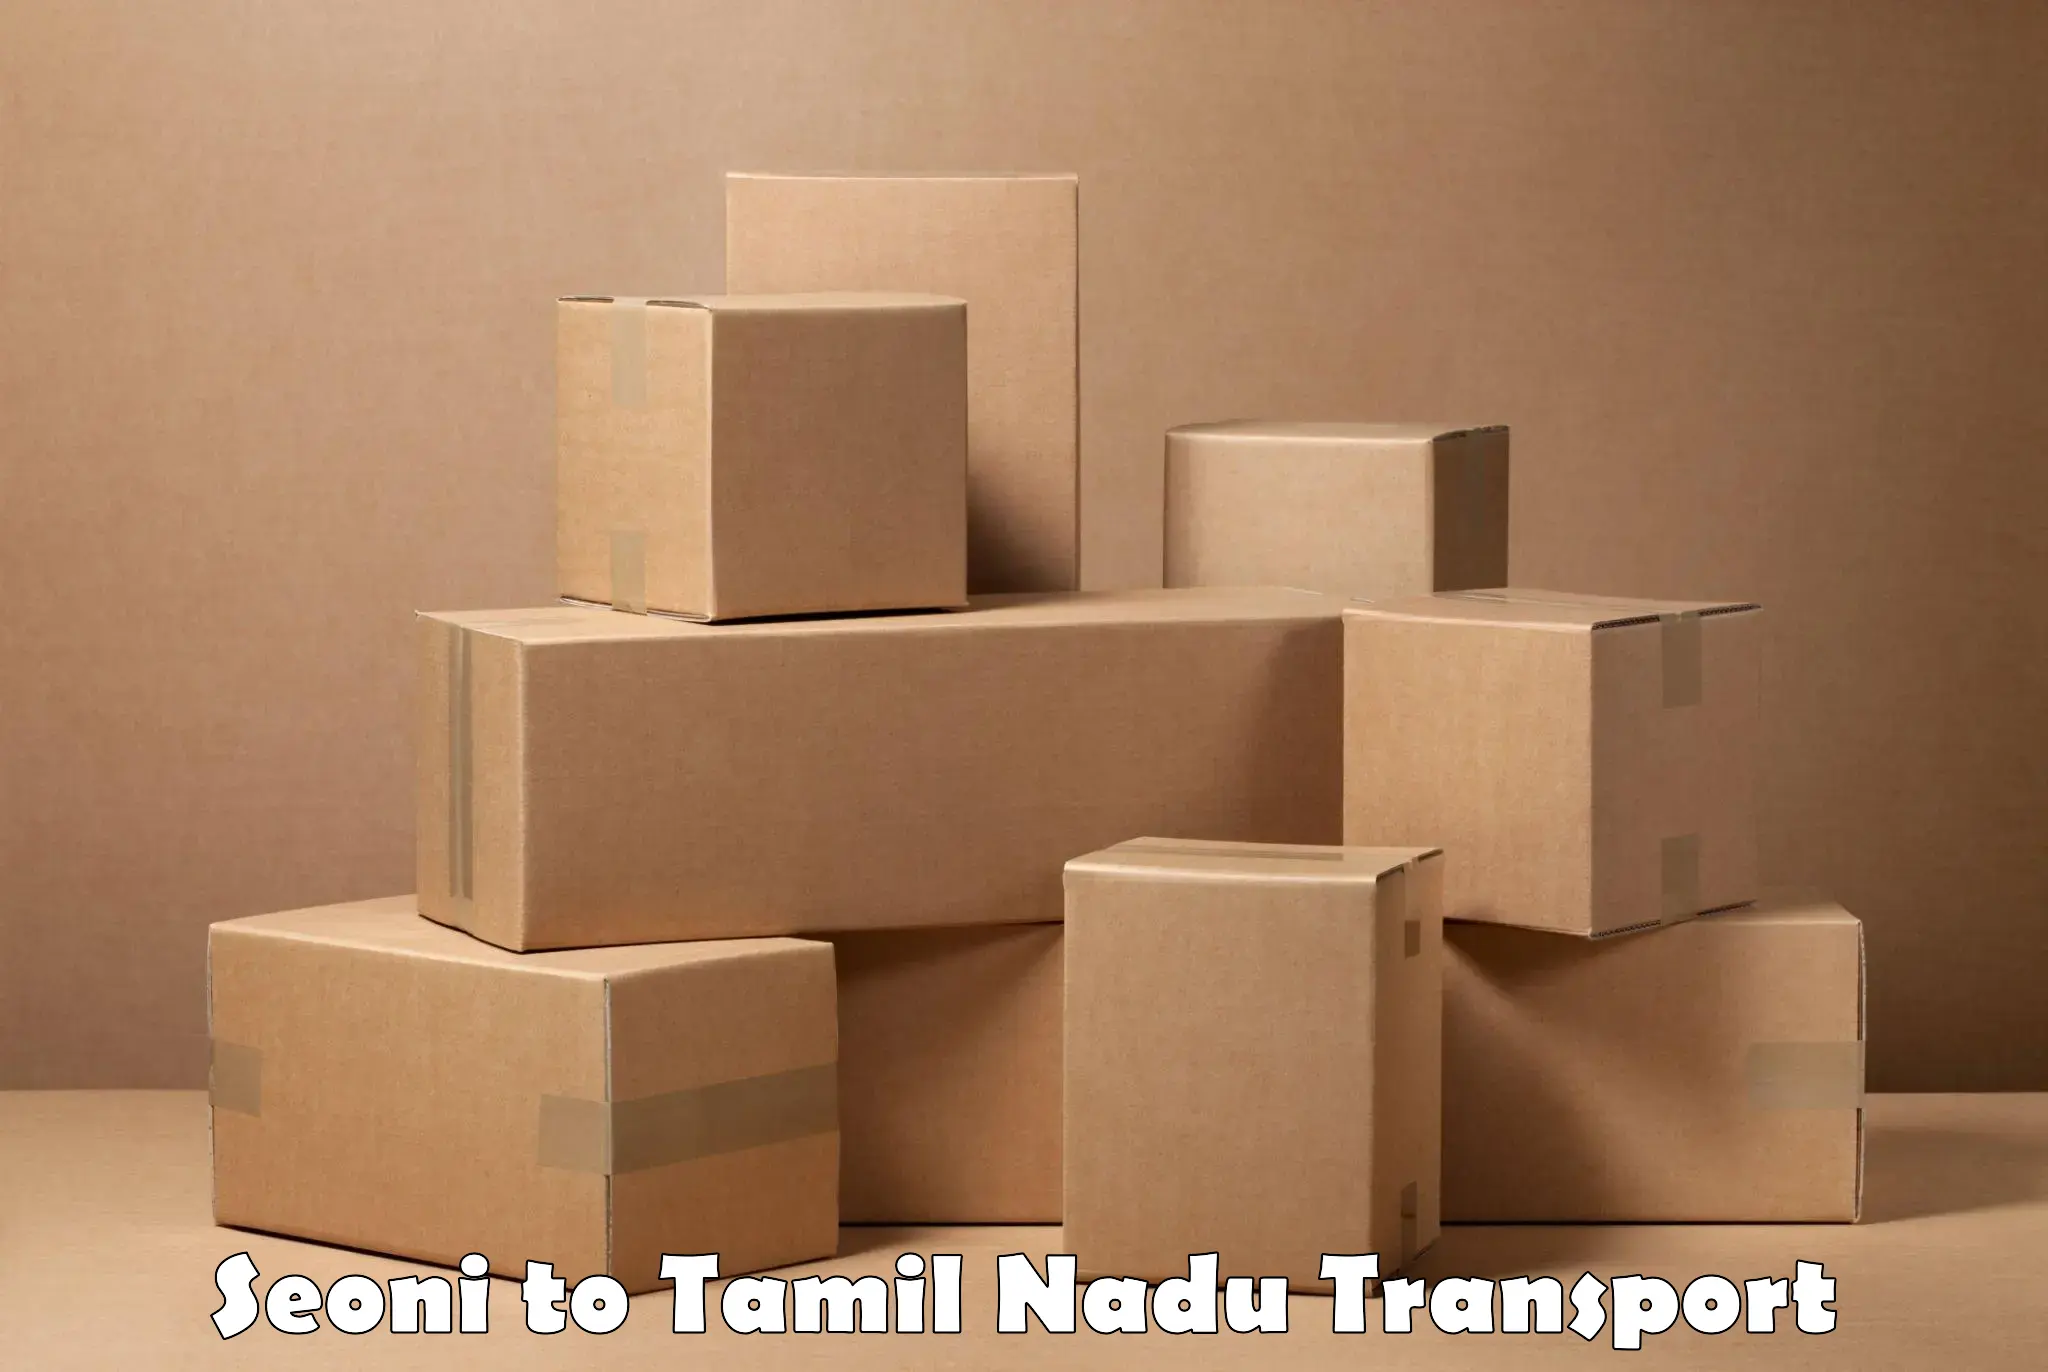 Truck transport companies in India Seoni to Tamil Nadu